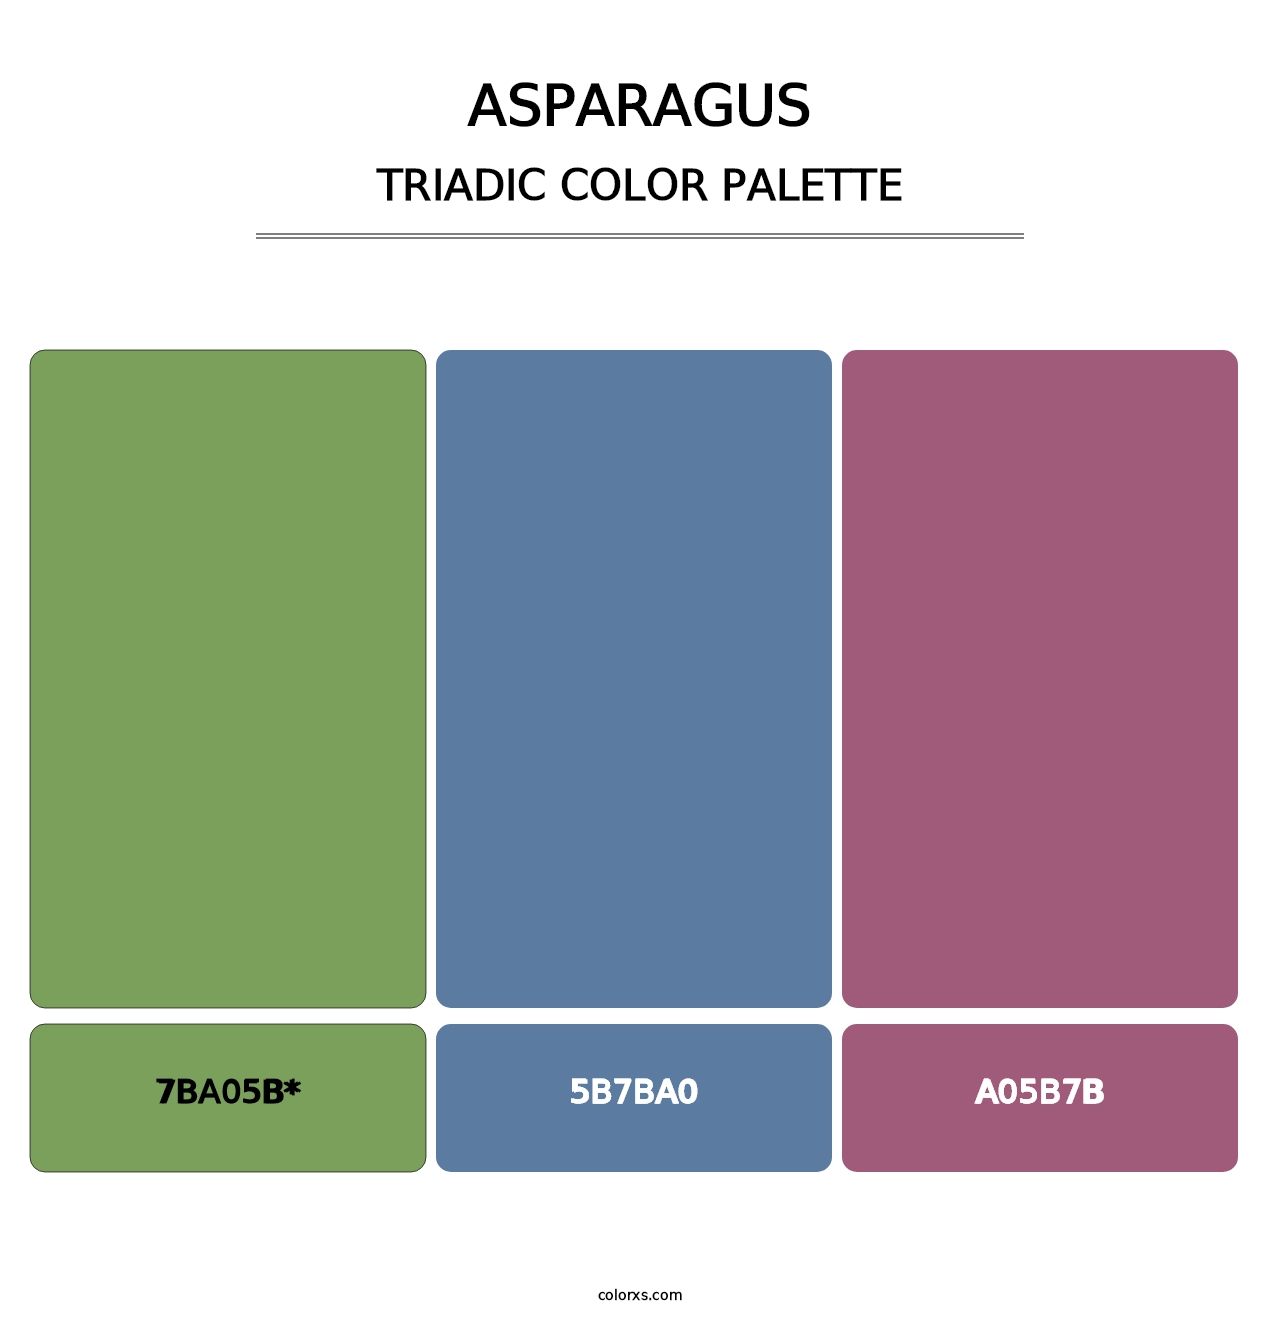 Asparagus - Triadic Color Palette